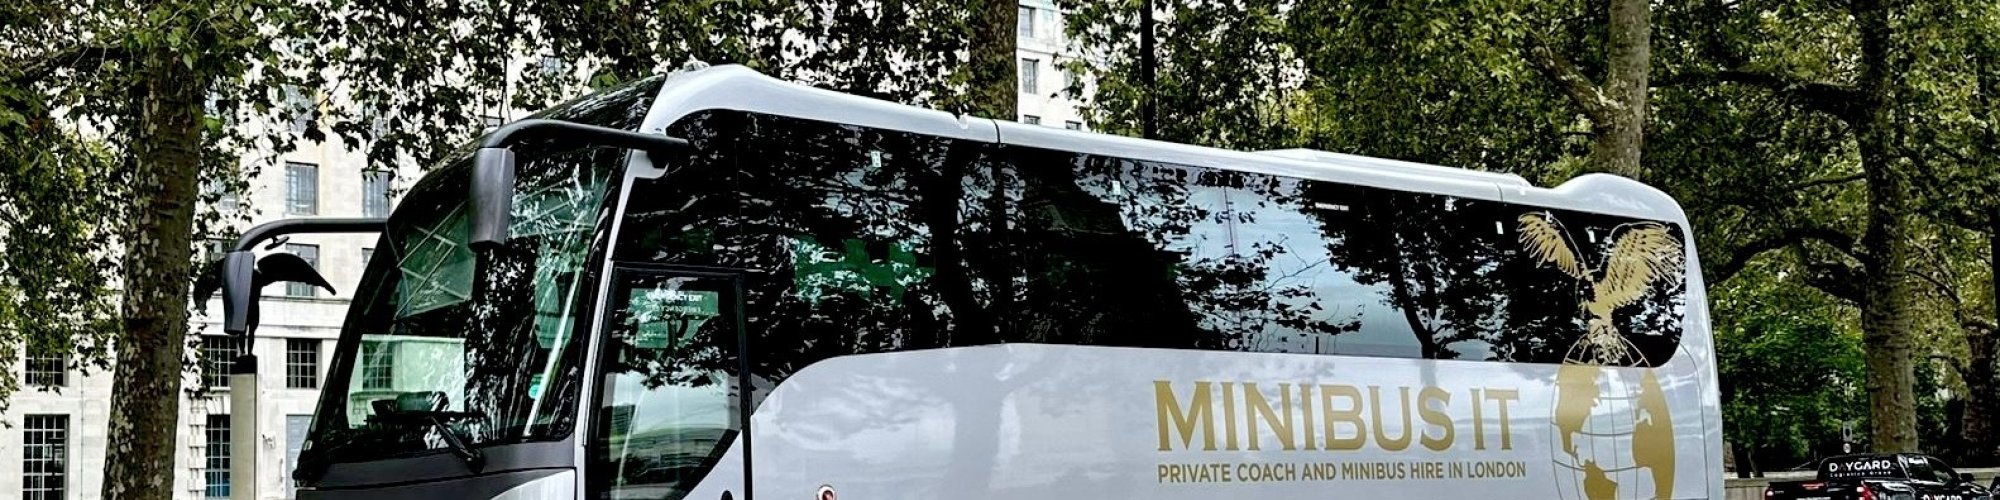 East London Minibus Hire - Minibus IT